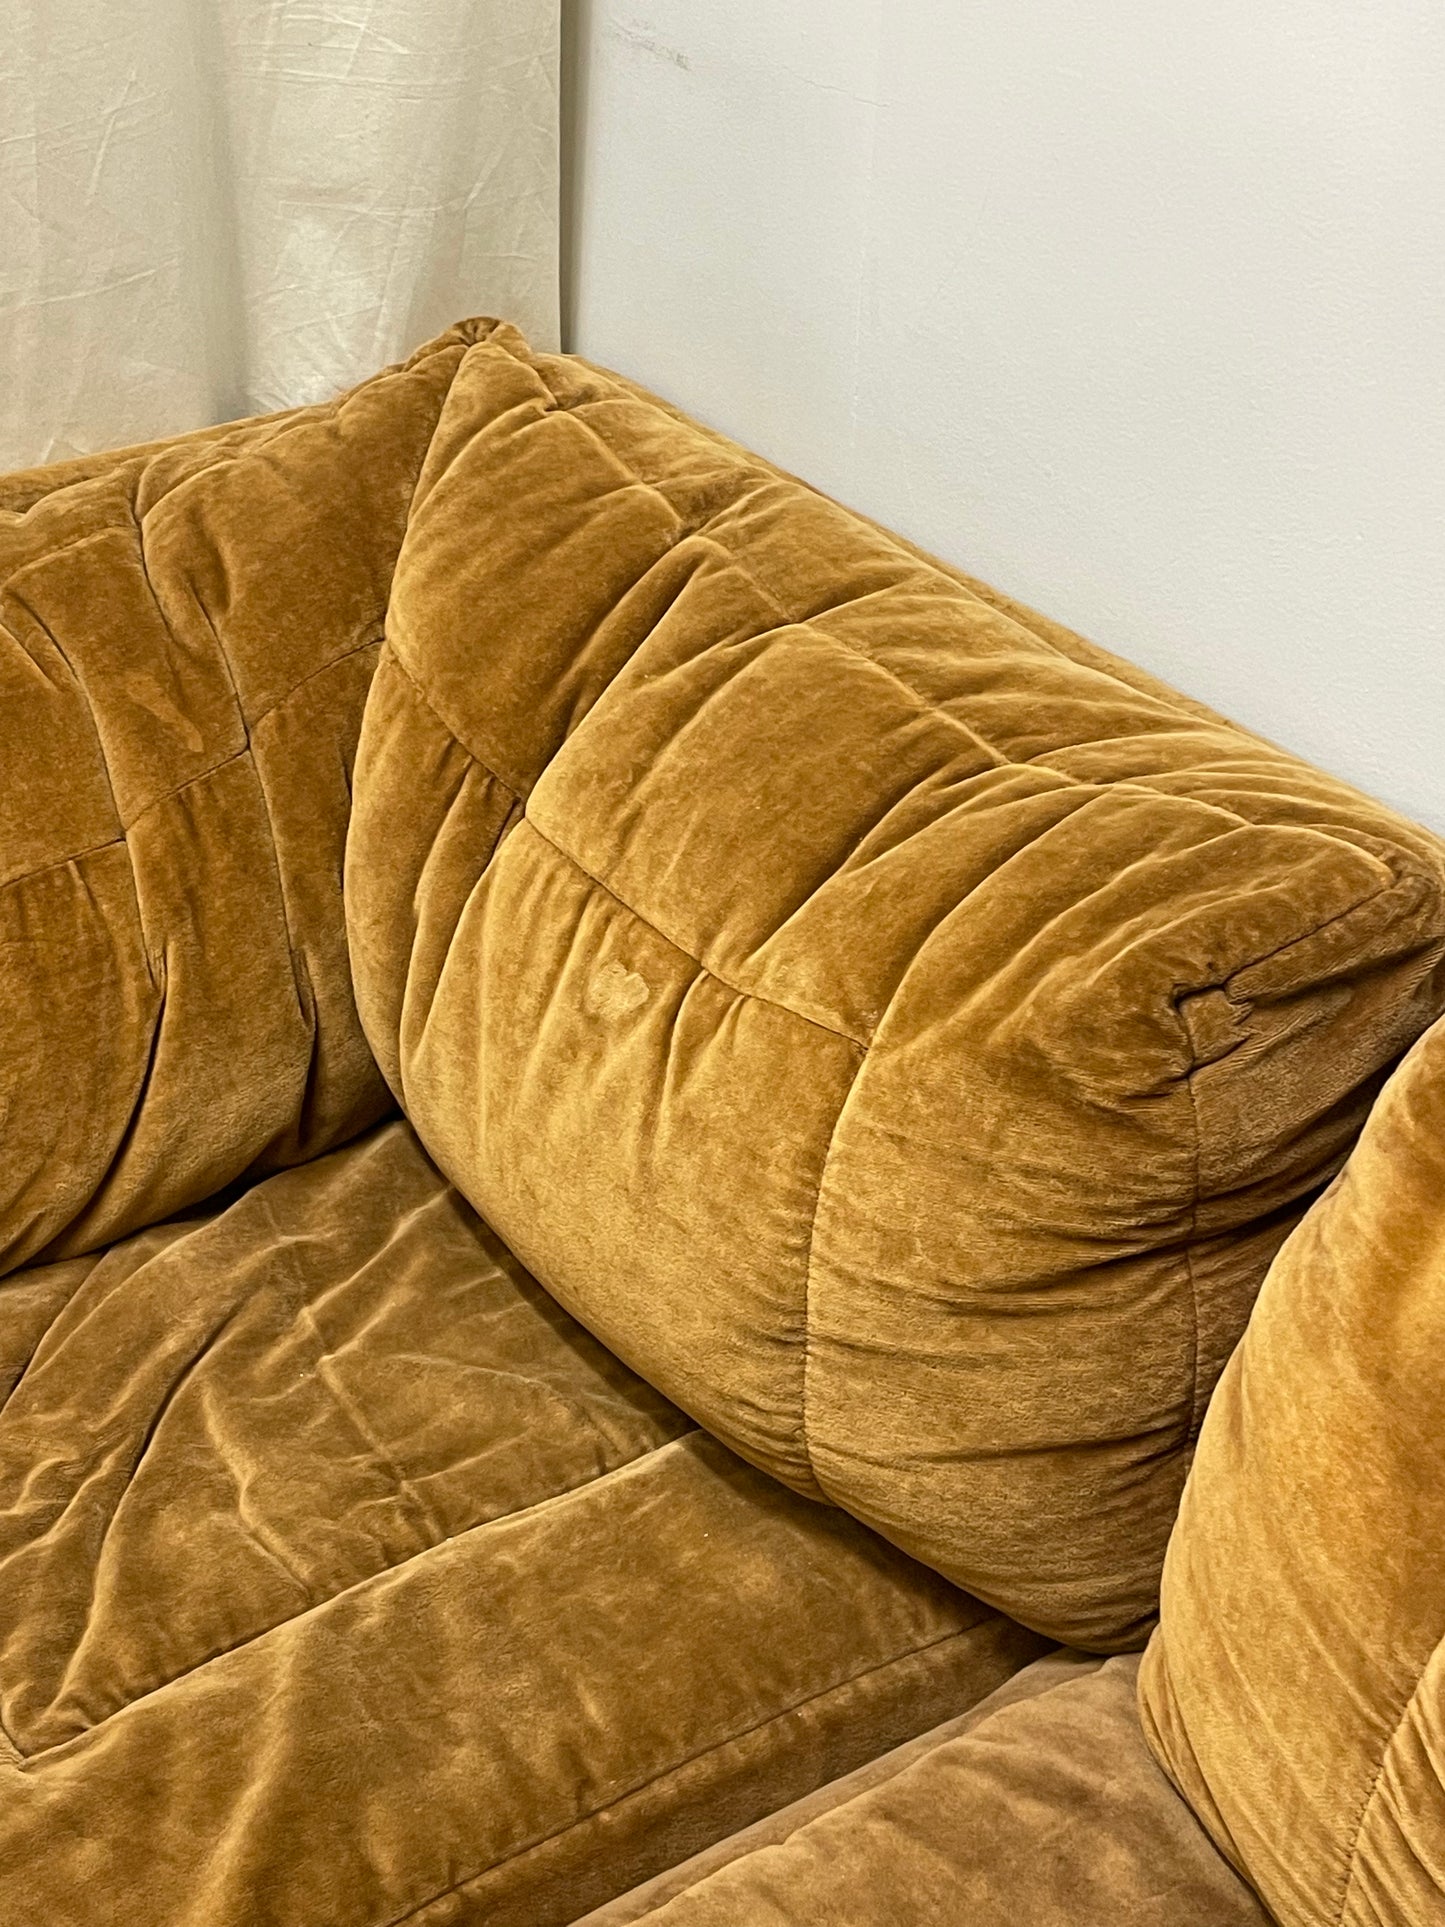 Moran Caramel Velvet Modular Sofa